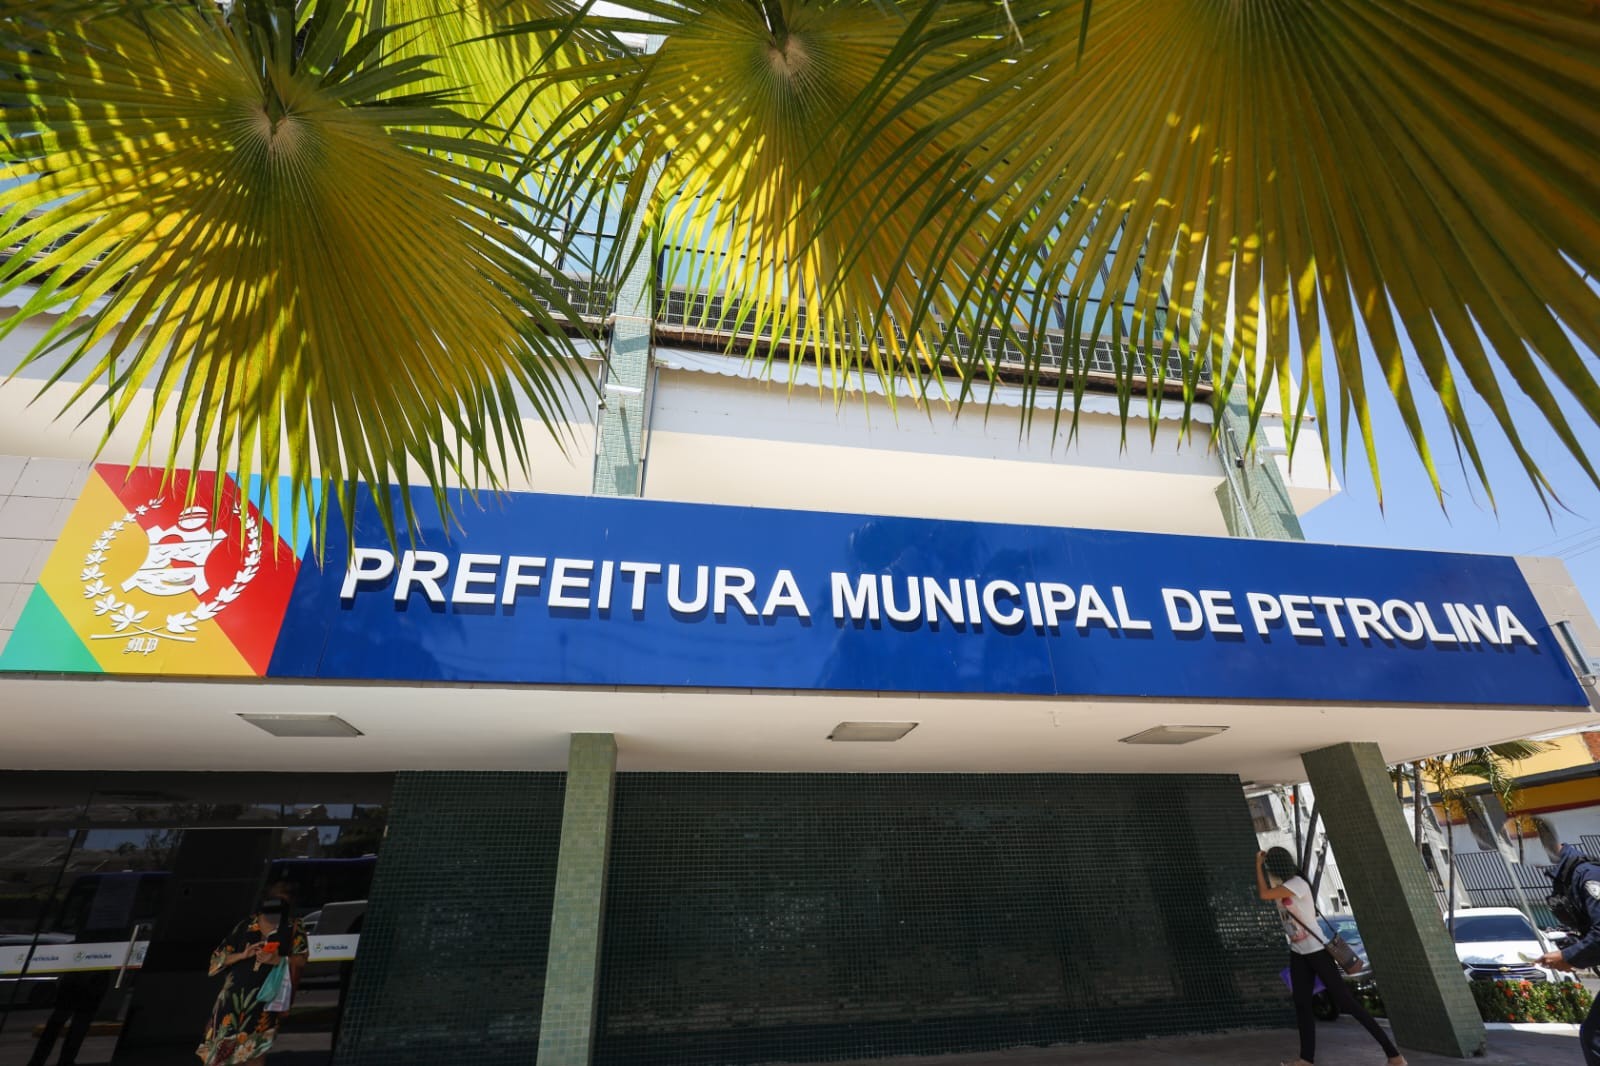 Prefeitura de Petrolina divulga novos telefones das secretarias municipais